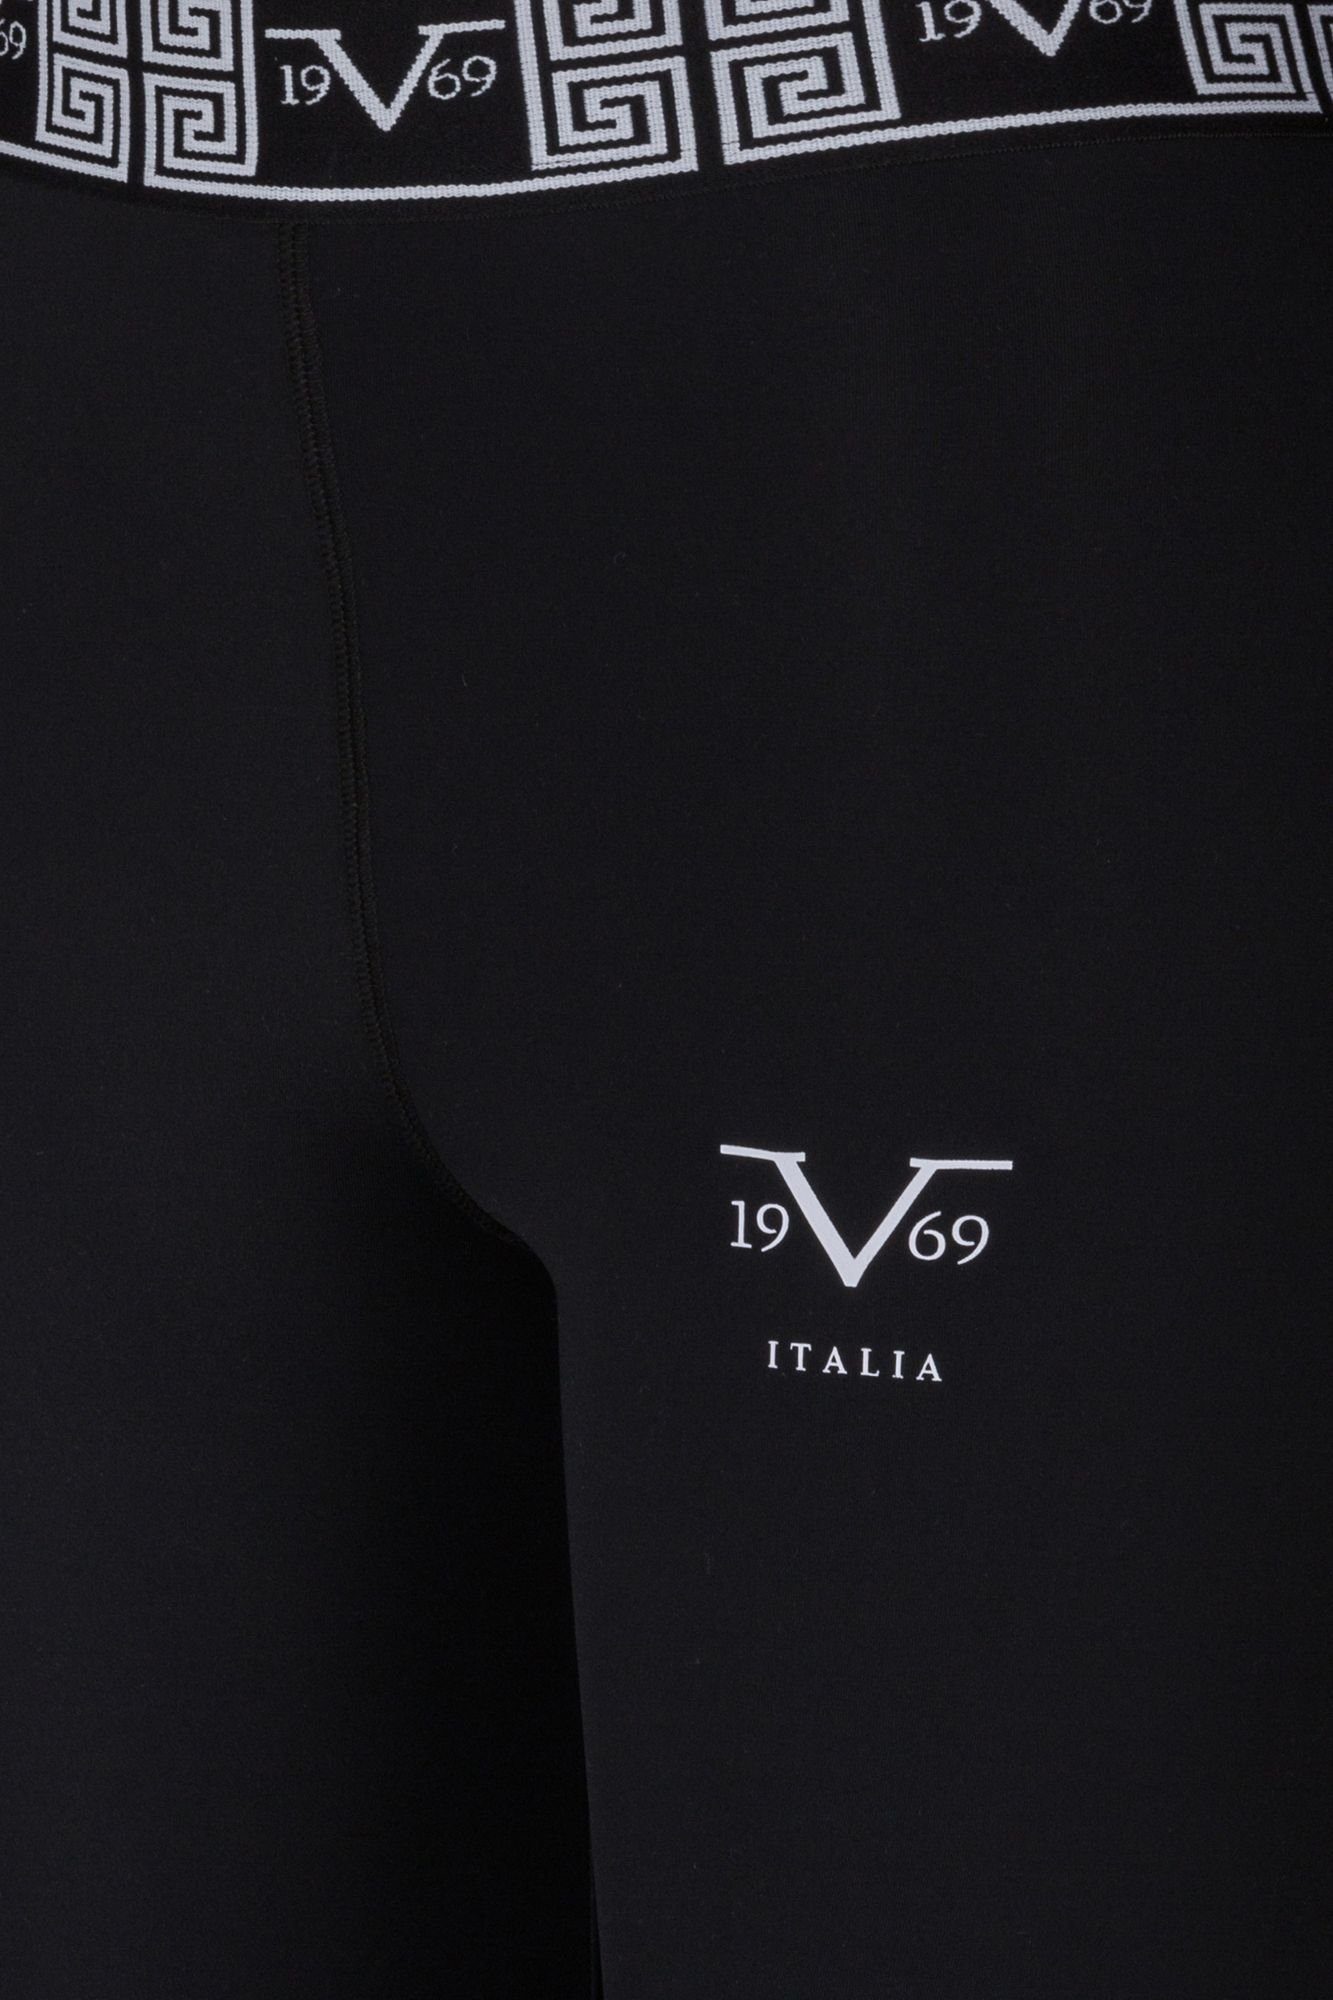 Italia Versace Alexa 19V69 by Yogashorts